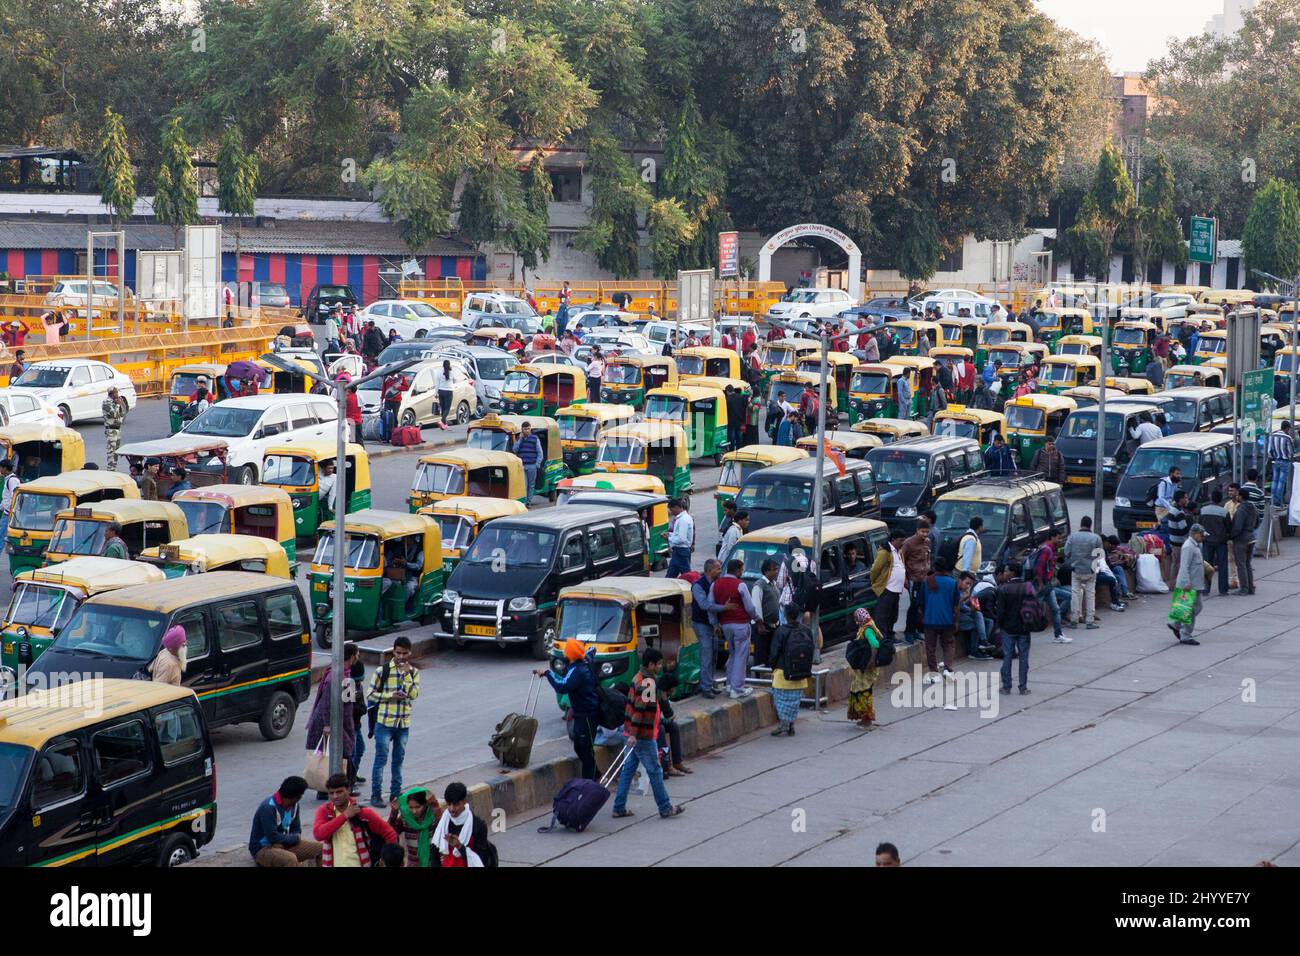 Taxis & auto rickshaws outside New Delhi Railway station, India Stock Photo